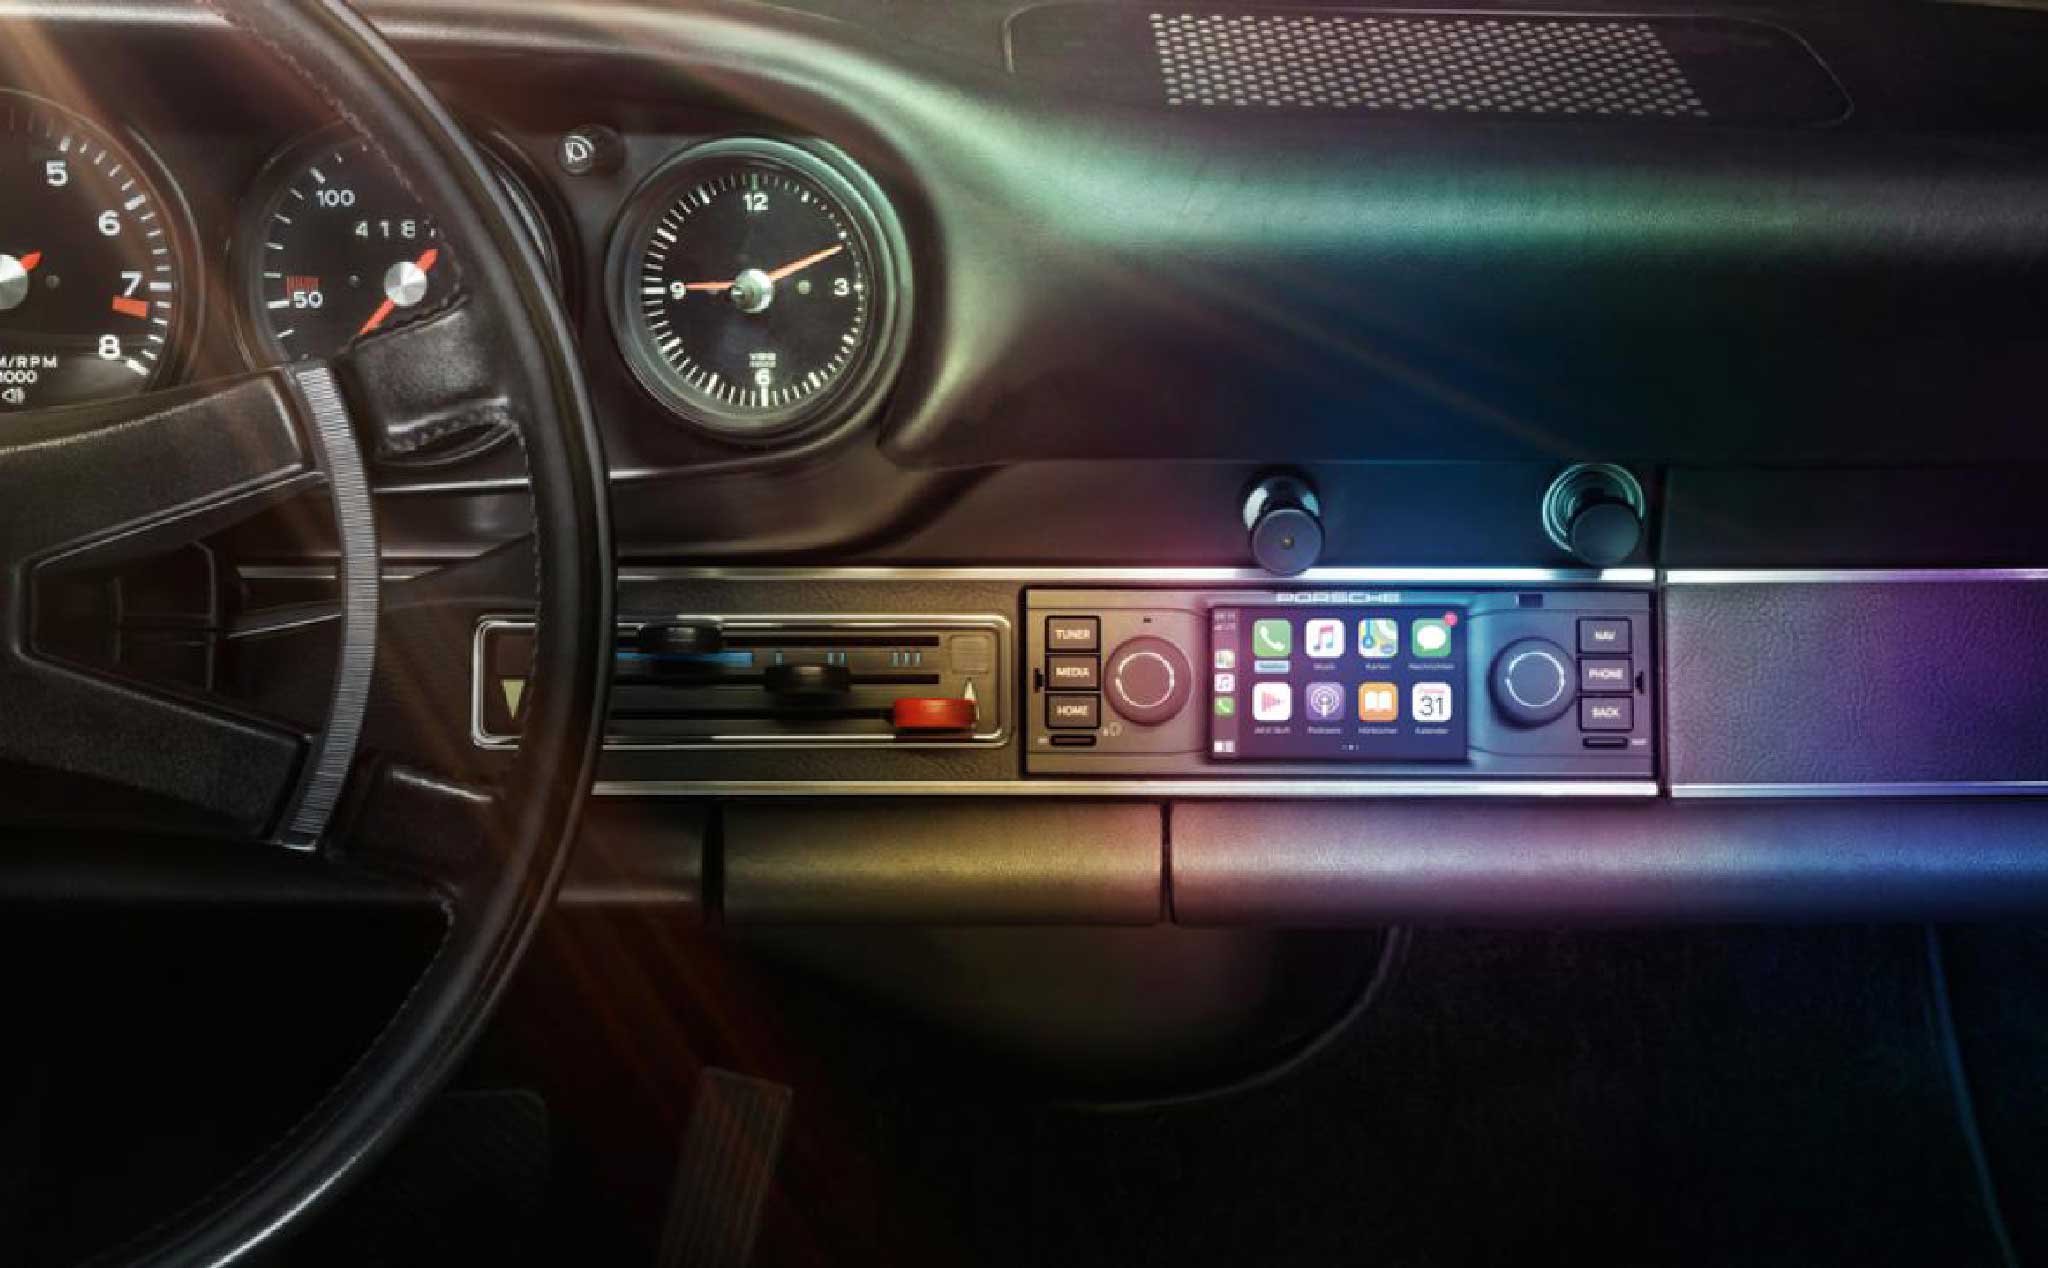 Porsche giới thiệu hệ thống màn hình cảm ứng, hỗ trợ Apple CarPlay cho 911 cổ